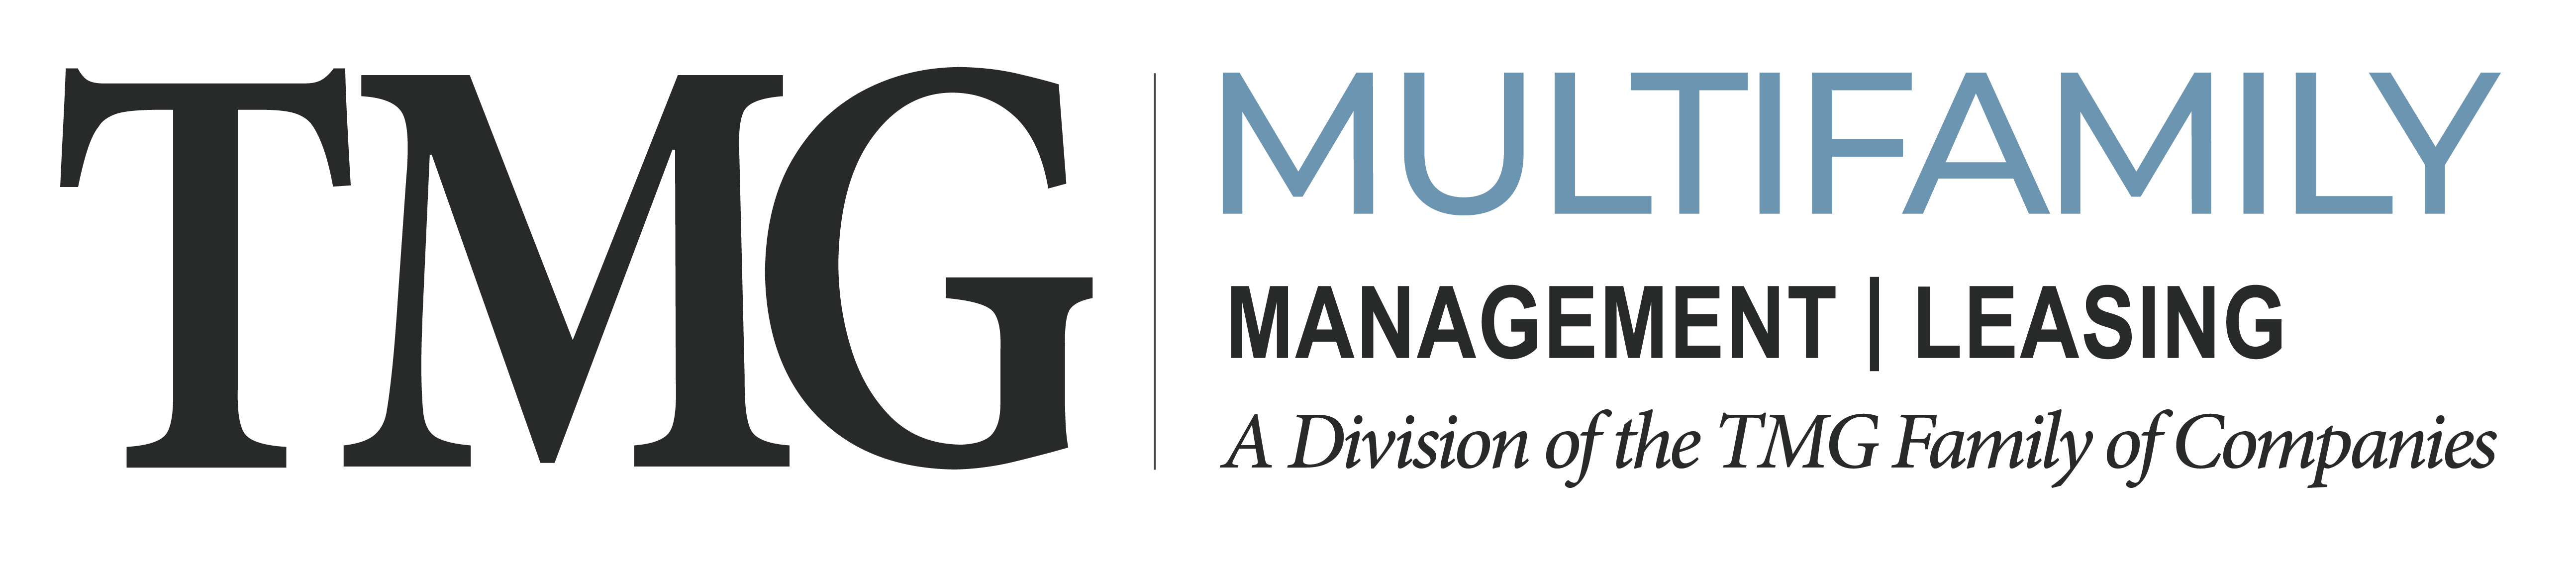 TMG Multifamily Branding_full-H